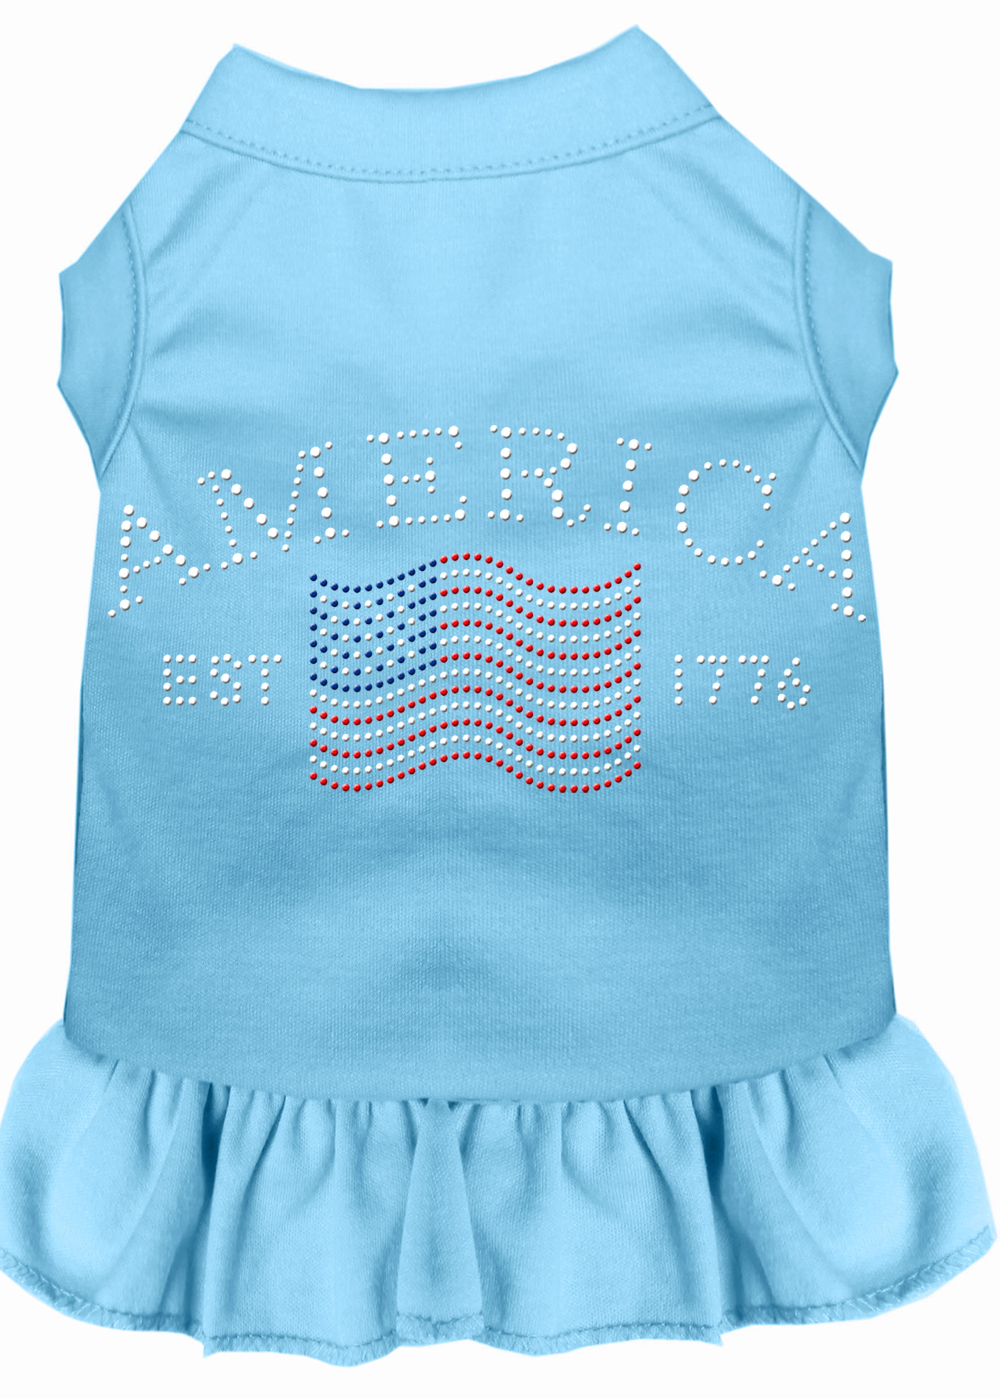 Classic America Rhinestone Dress Baby Blue XXXL